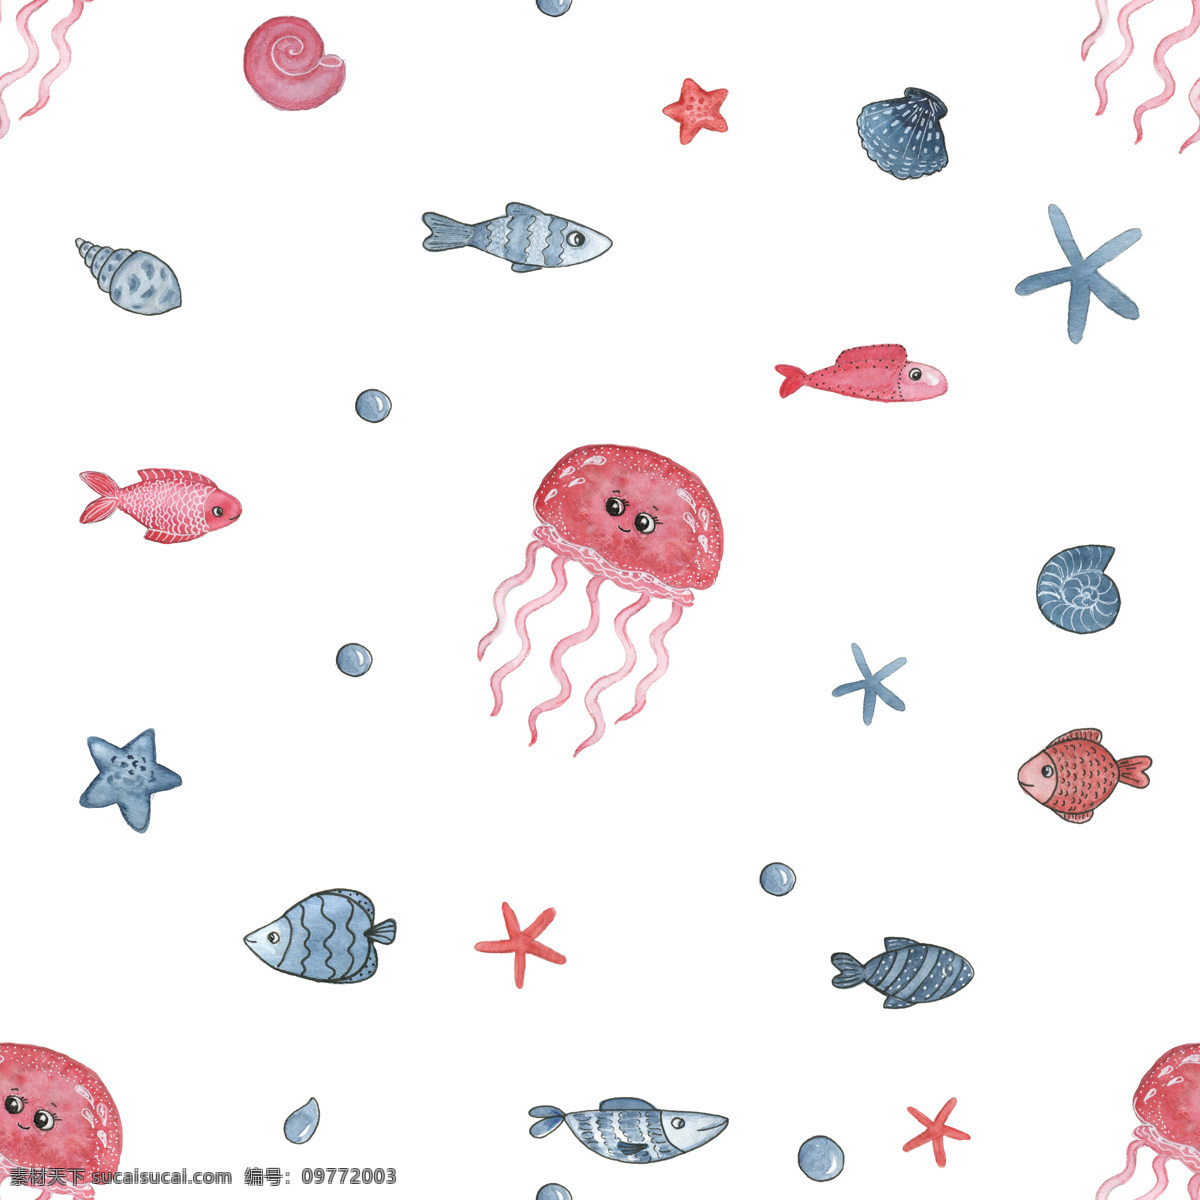 手绘 海底 世界 生物 背景 背景素材 海草 海星 红色 螺 水母 小雨